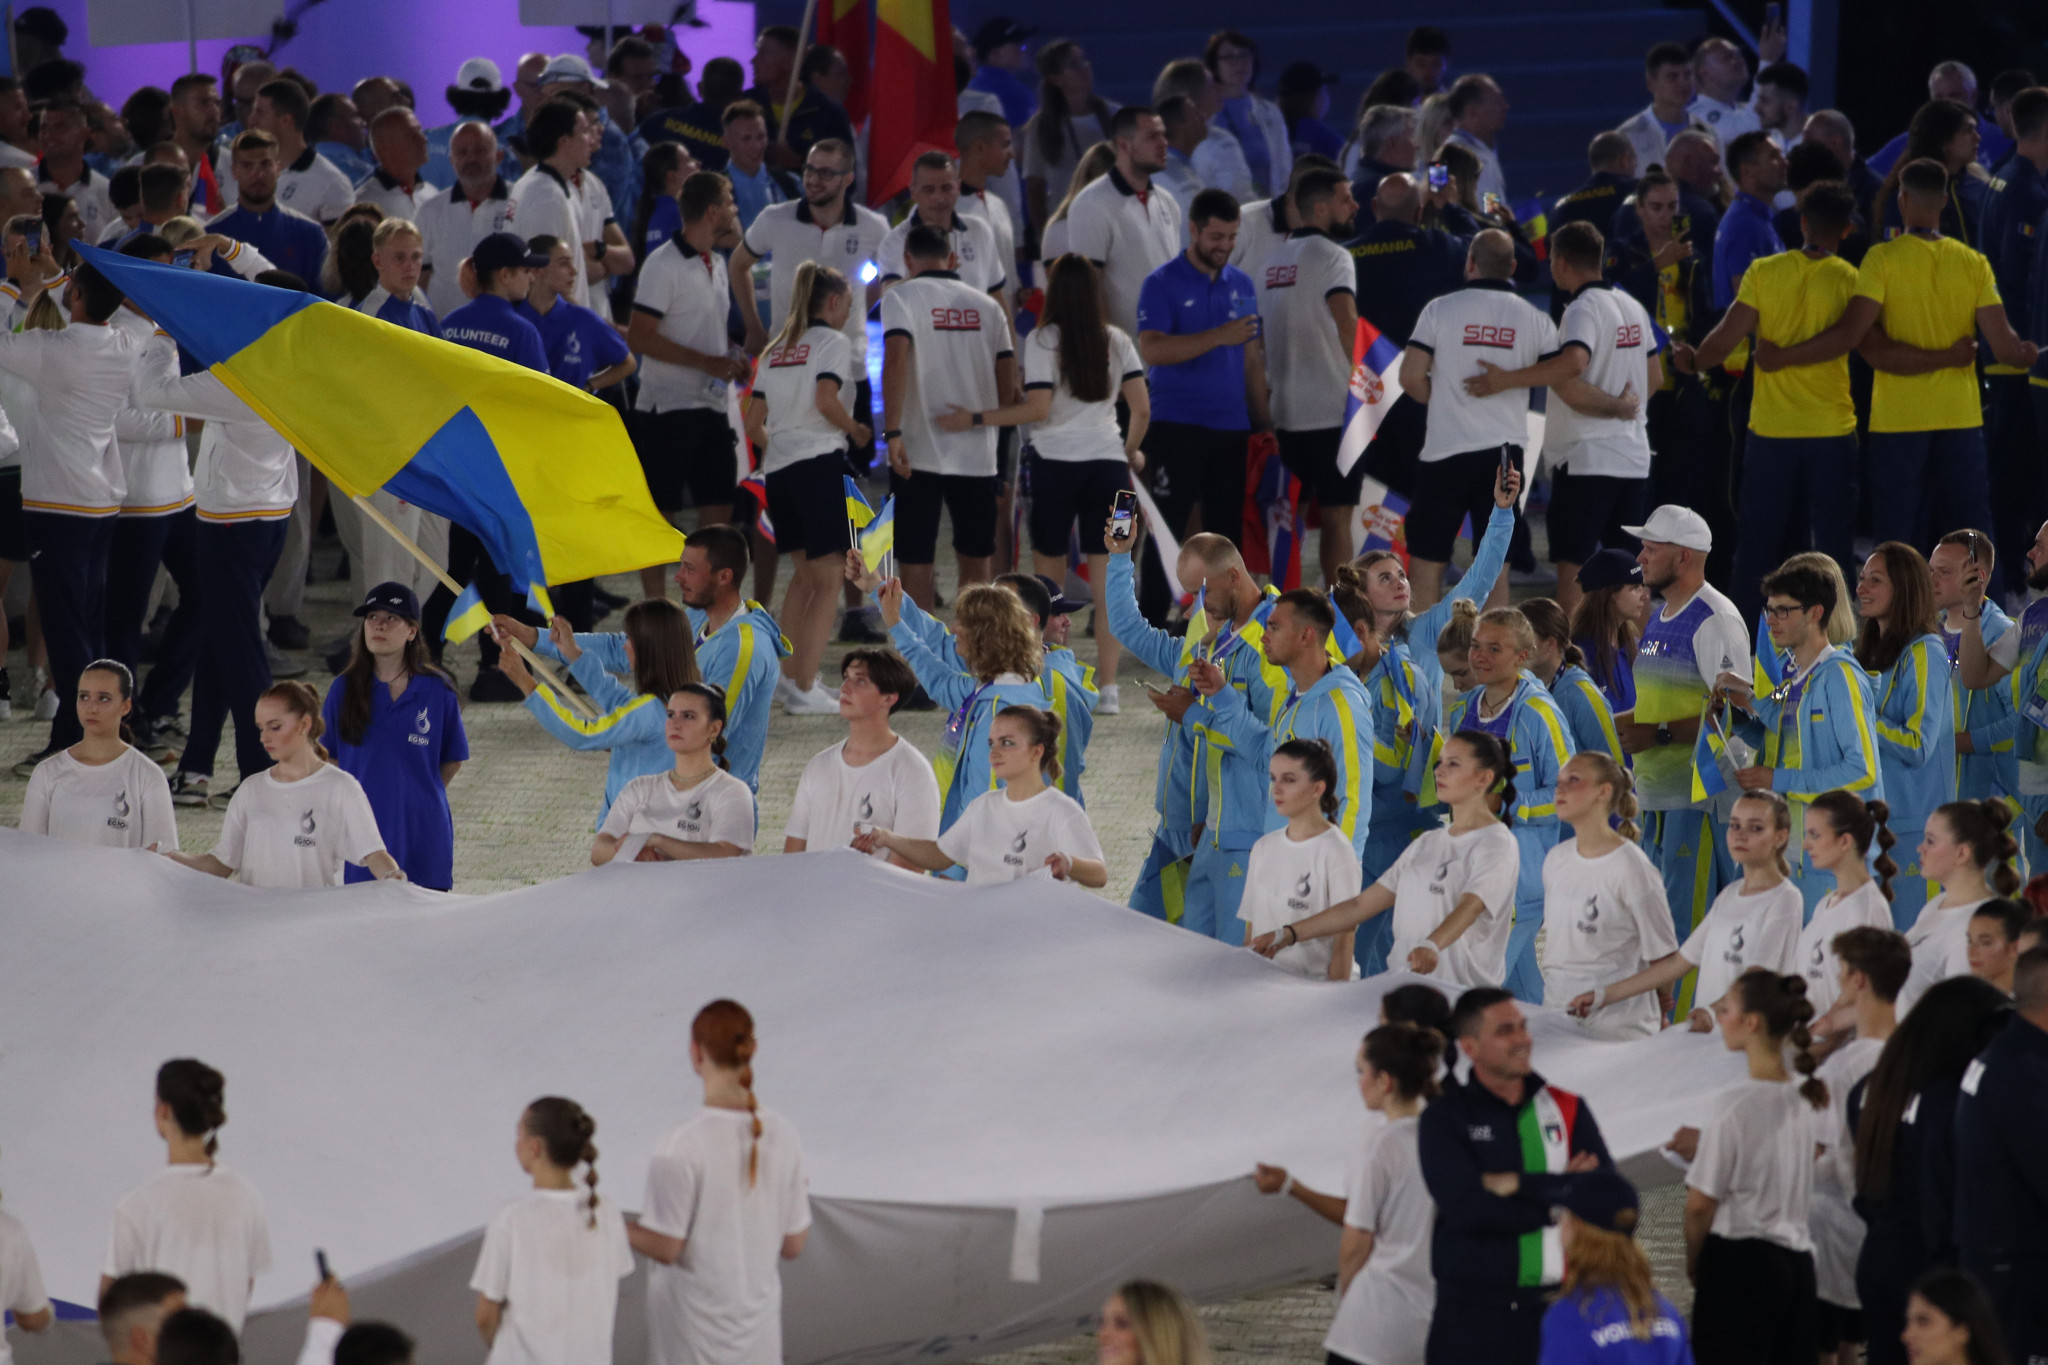 Ukraine receive "very special welcome" to Kraków-Małopolska 2023 European Games